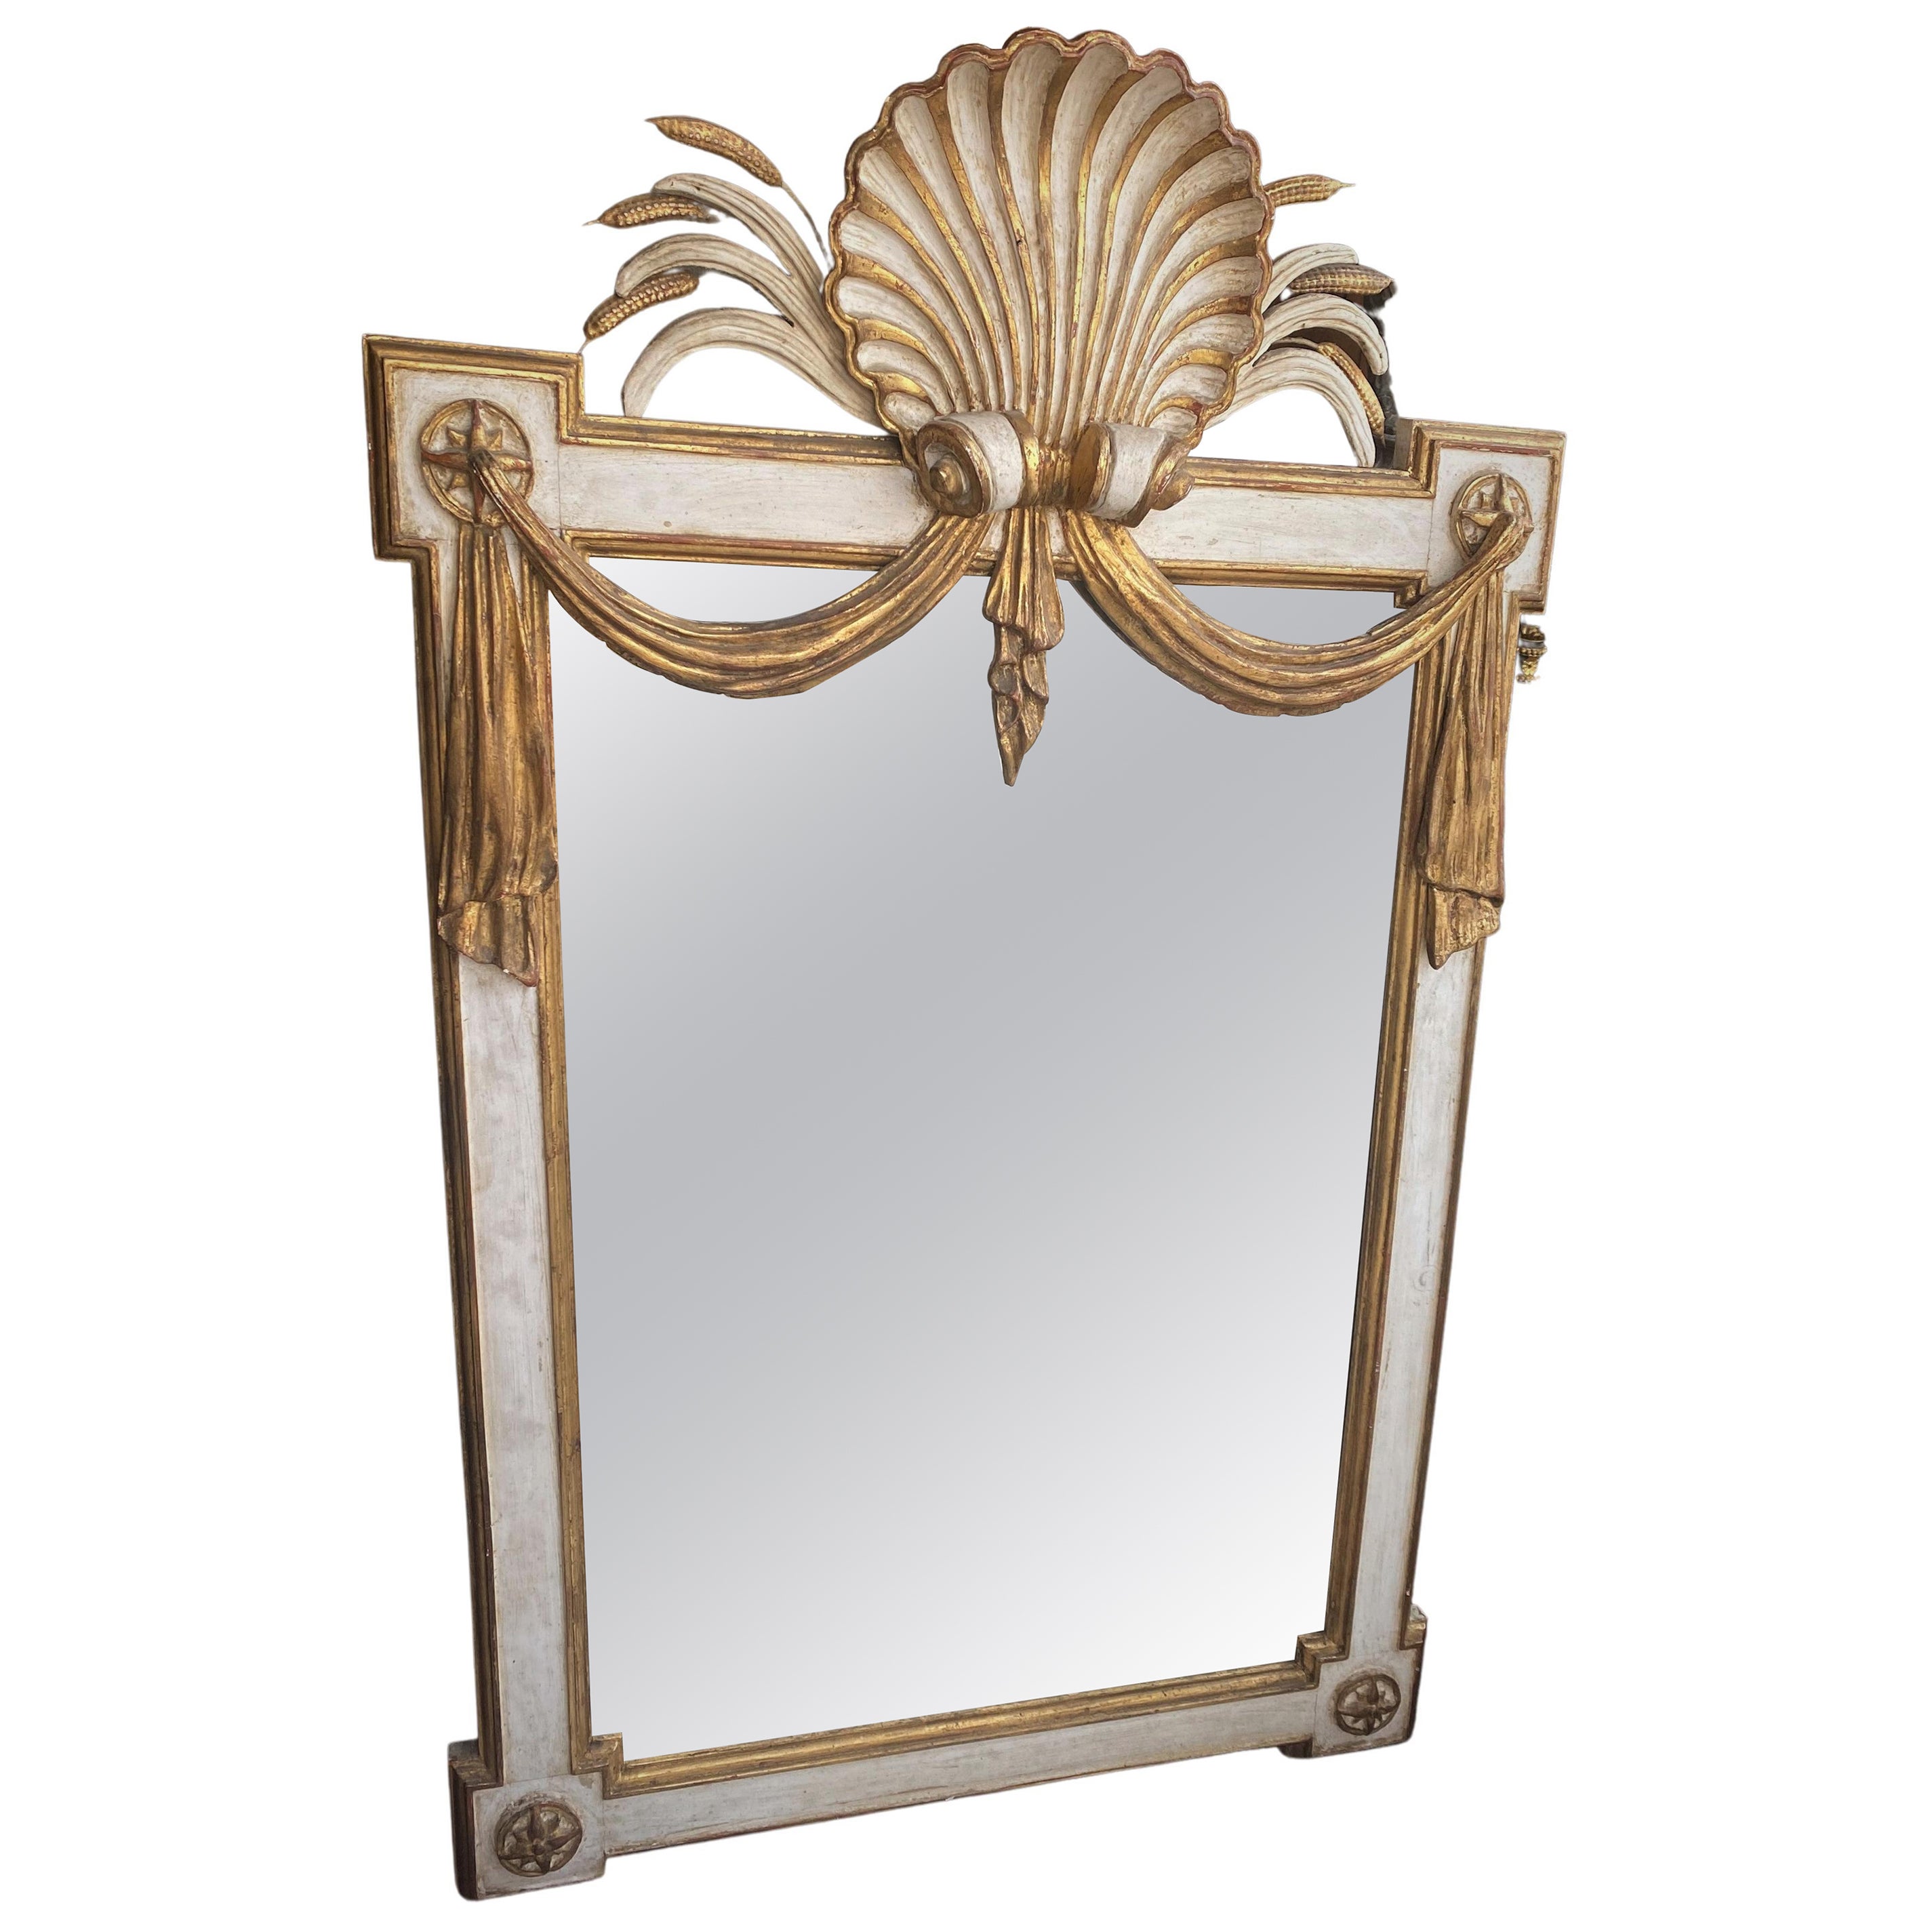 Grand miroir italien en bois sculpté avec étoile de blé et tissu drapé blanc et or